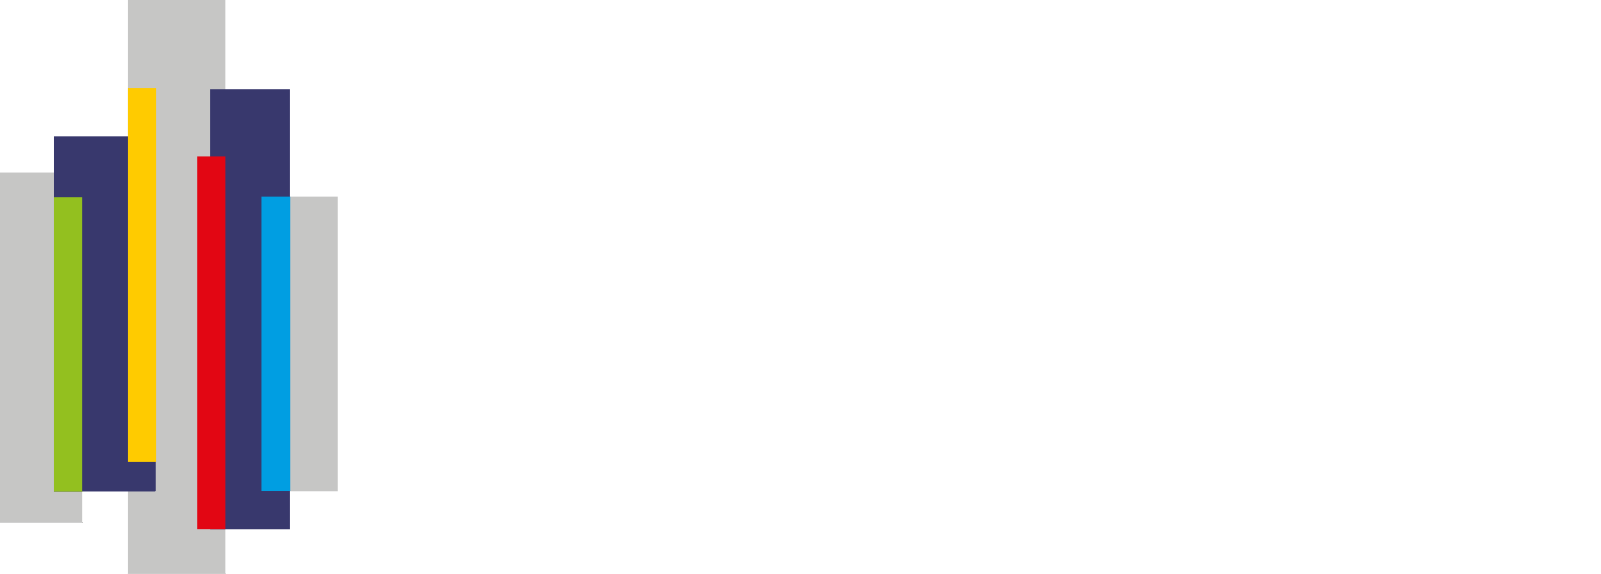 Energy Vault logo large for dark backgrounds (transparent PNG)